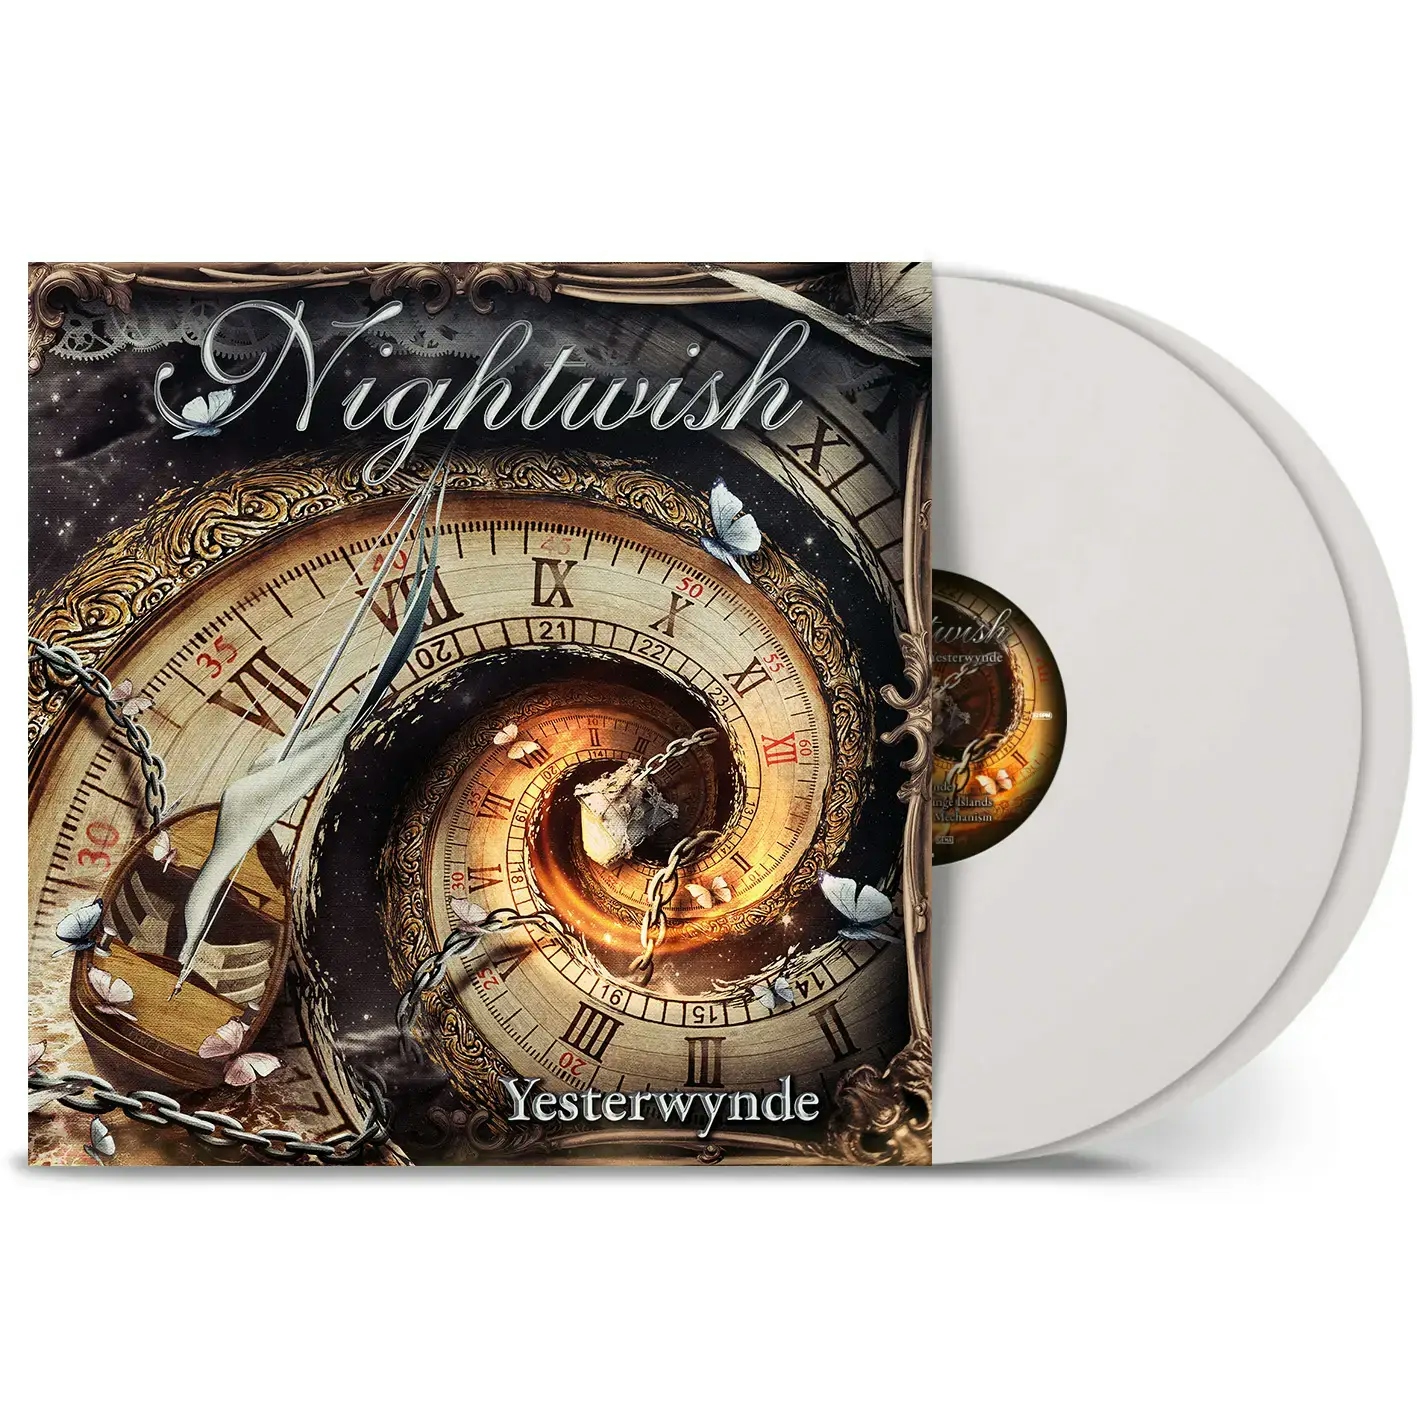 Album artwork for Album artwork for Yesterwynde by Nightwish by Yesterwynde - Nightwish